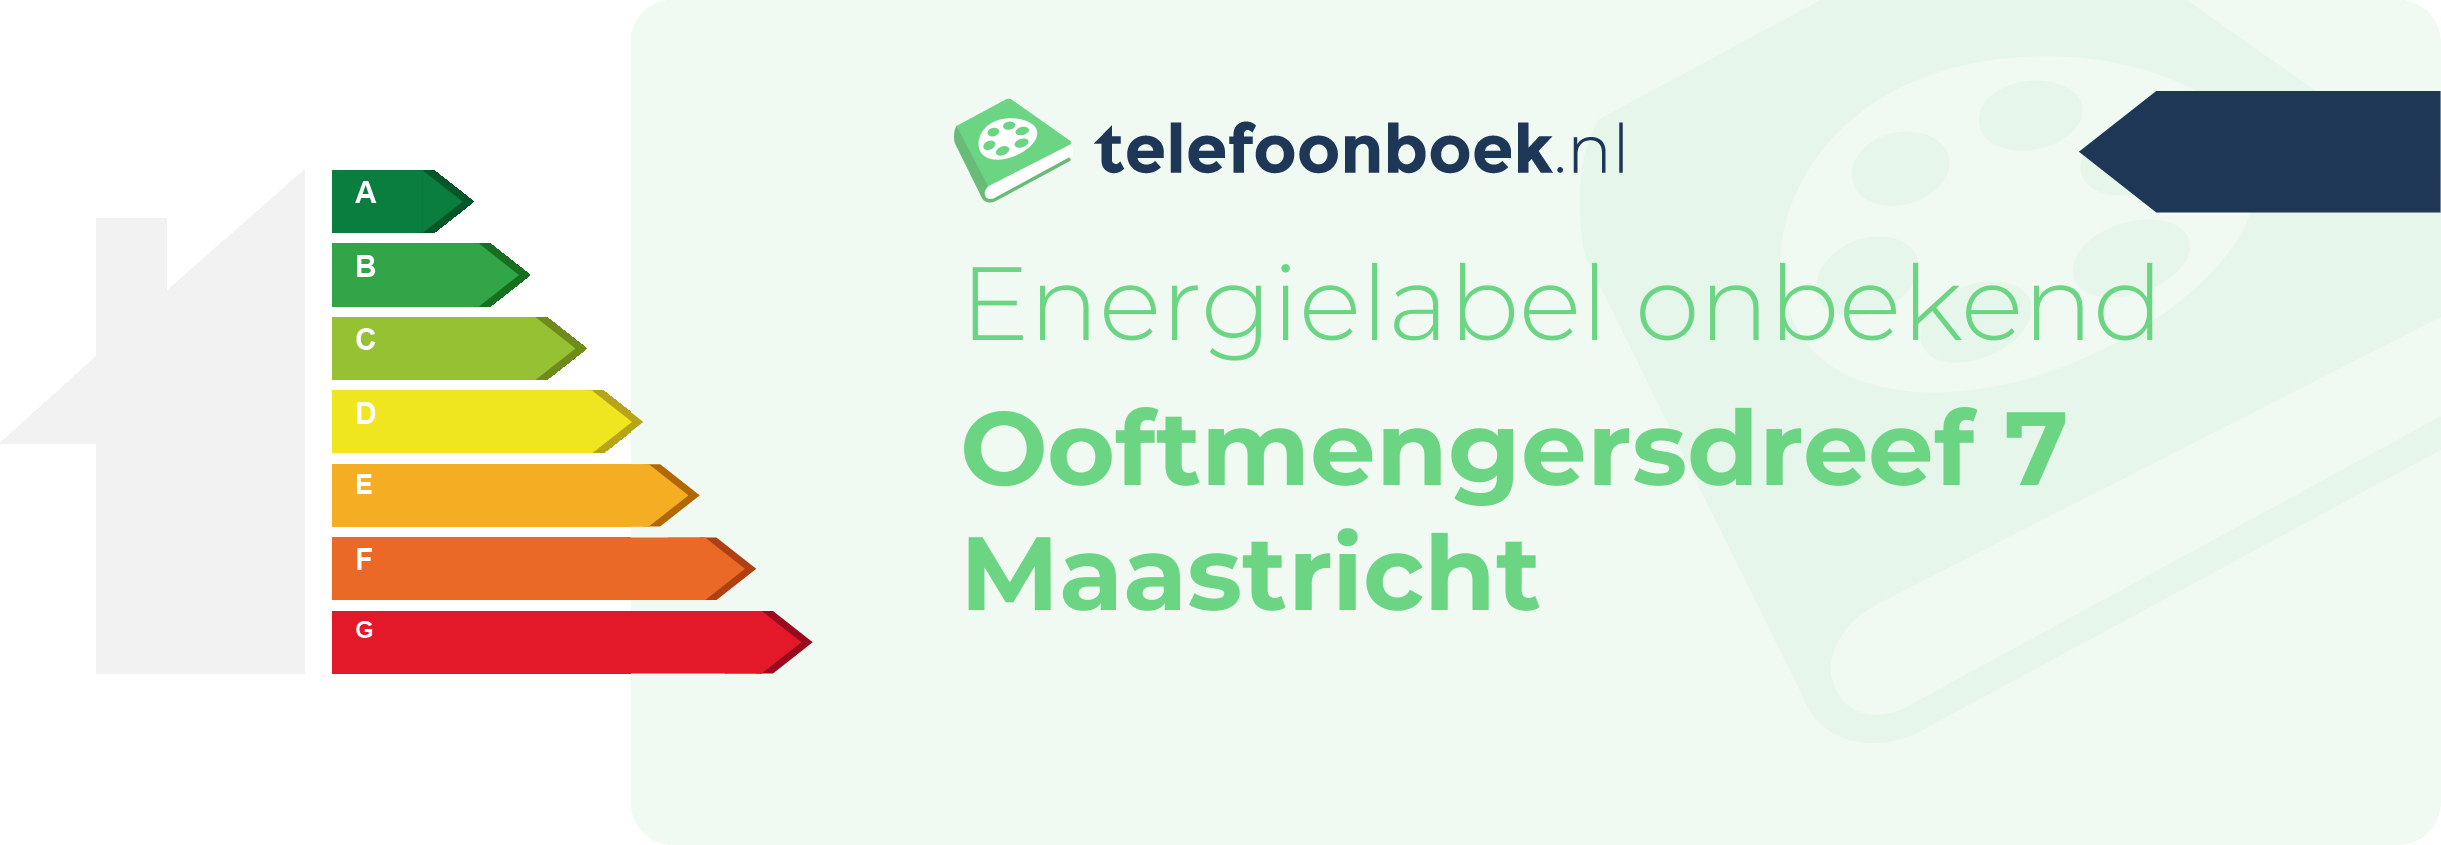 Energielabel Ooftmengersdreef 7 Maastricht